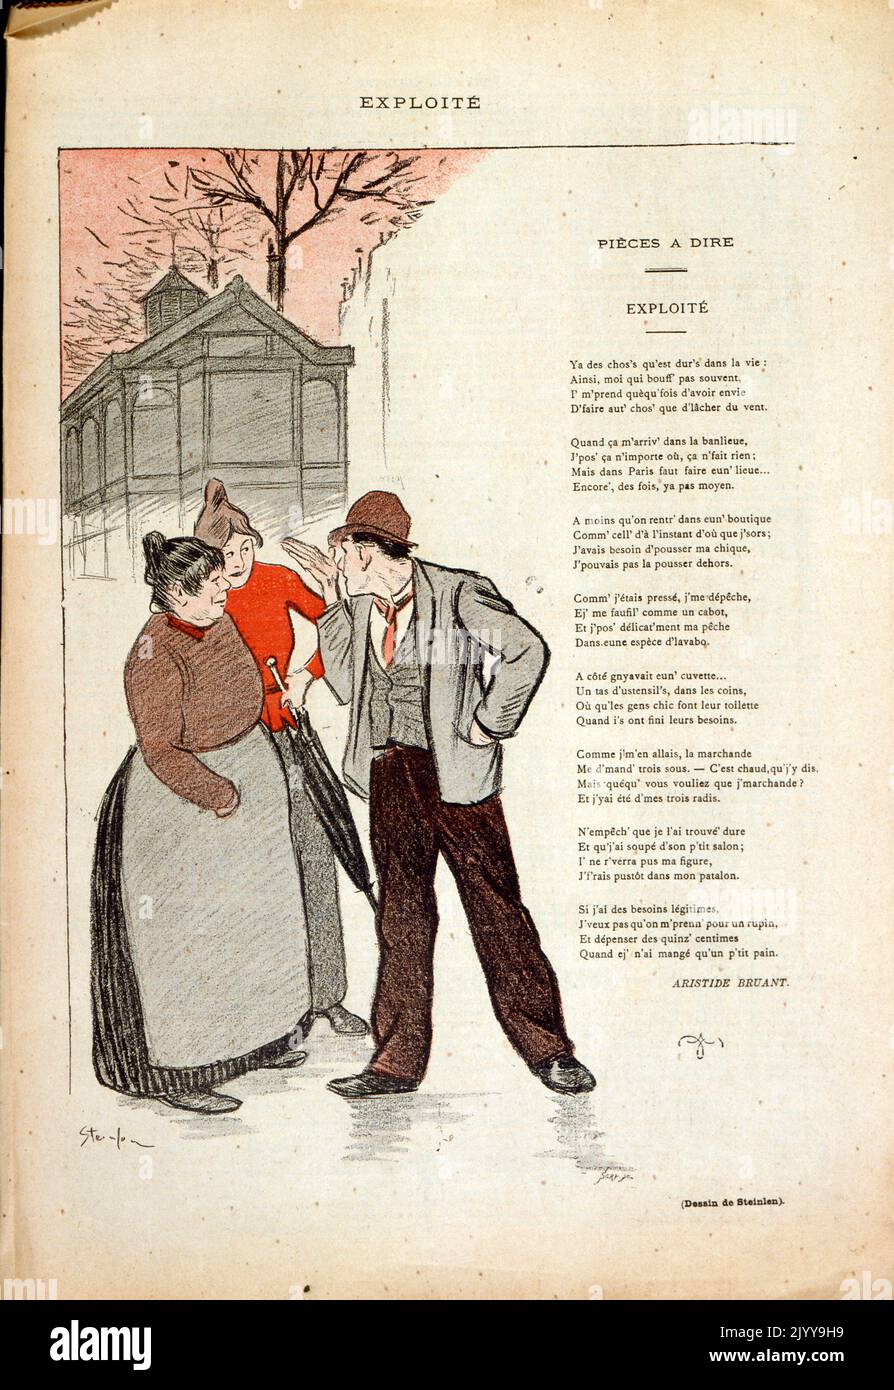 Ein Gedicht mit farbigen Abbildungen. Zwei als Bauern gekleidete Damen sprechen mit einem Mann. Das Gedicht wird von Aristide Bruant (1851-1925) als „ausgebeutet“ bezeichnet. Stockfoto